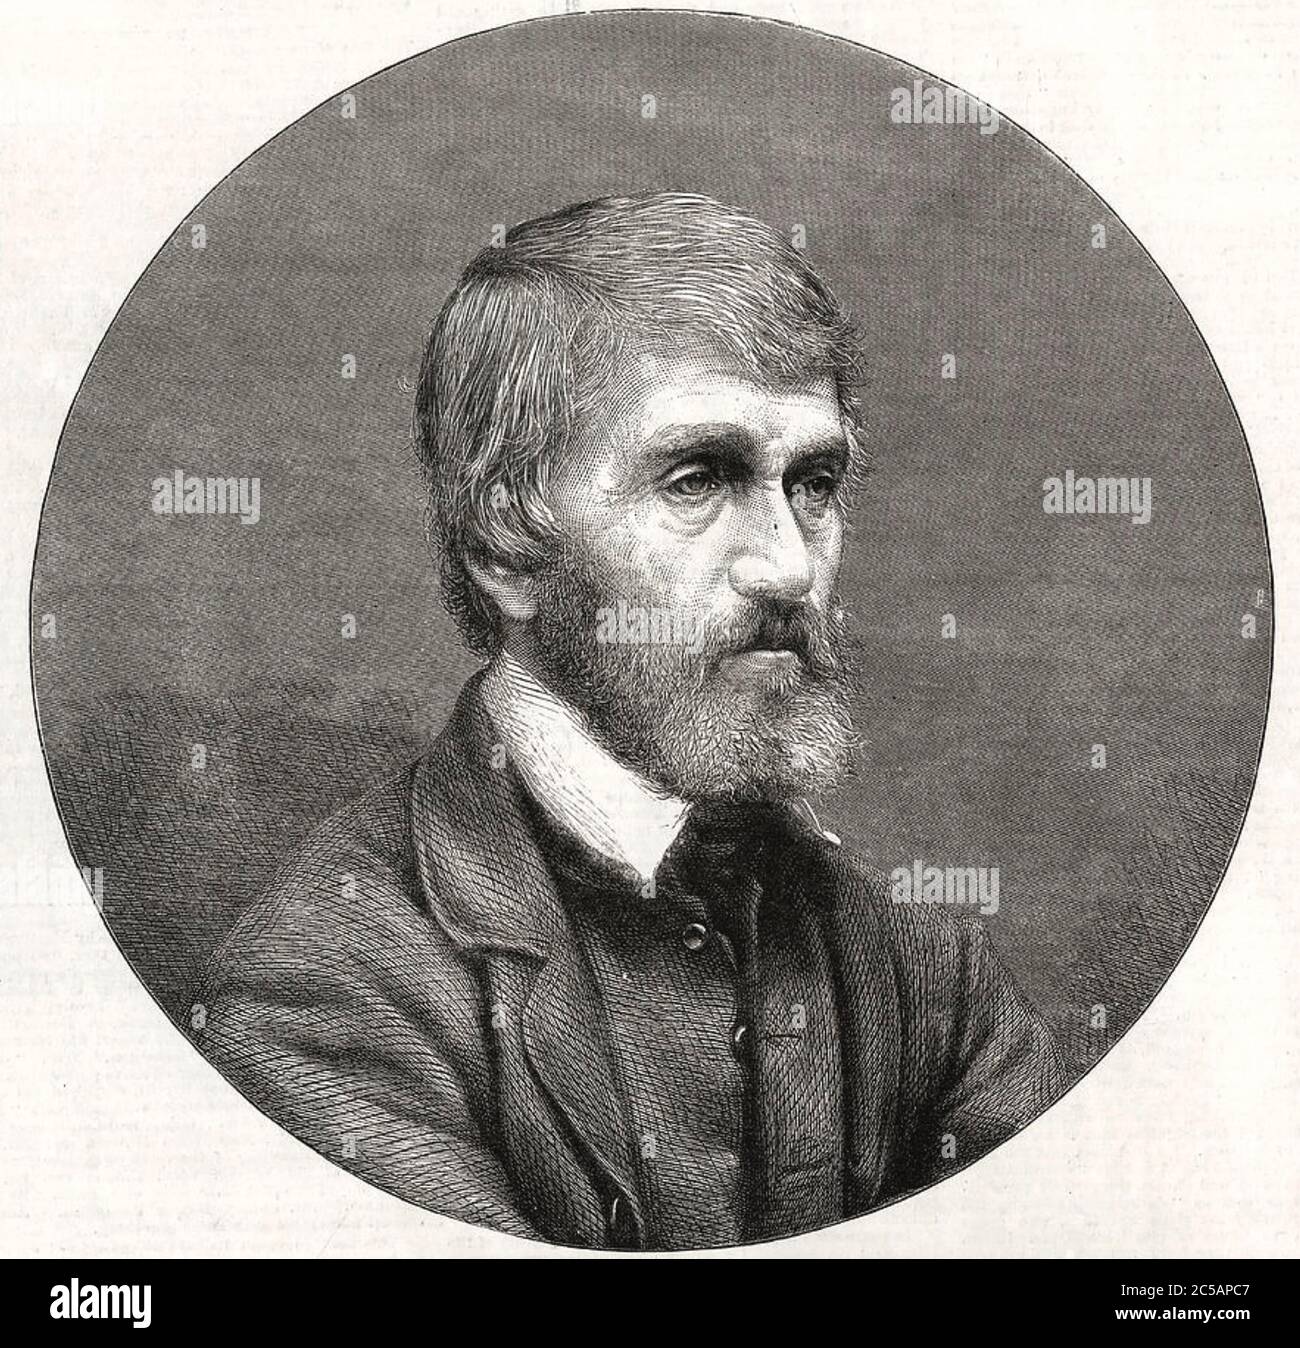 THOMAS CARLYLE (1795-1881) historien écossais, mathématicien, traducteur. Banque D'Images